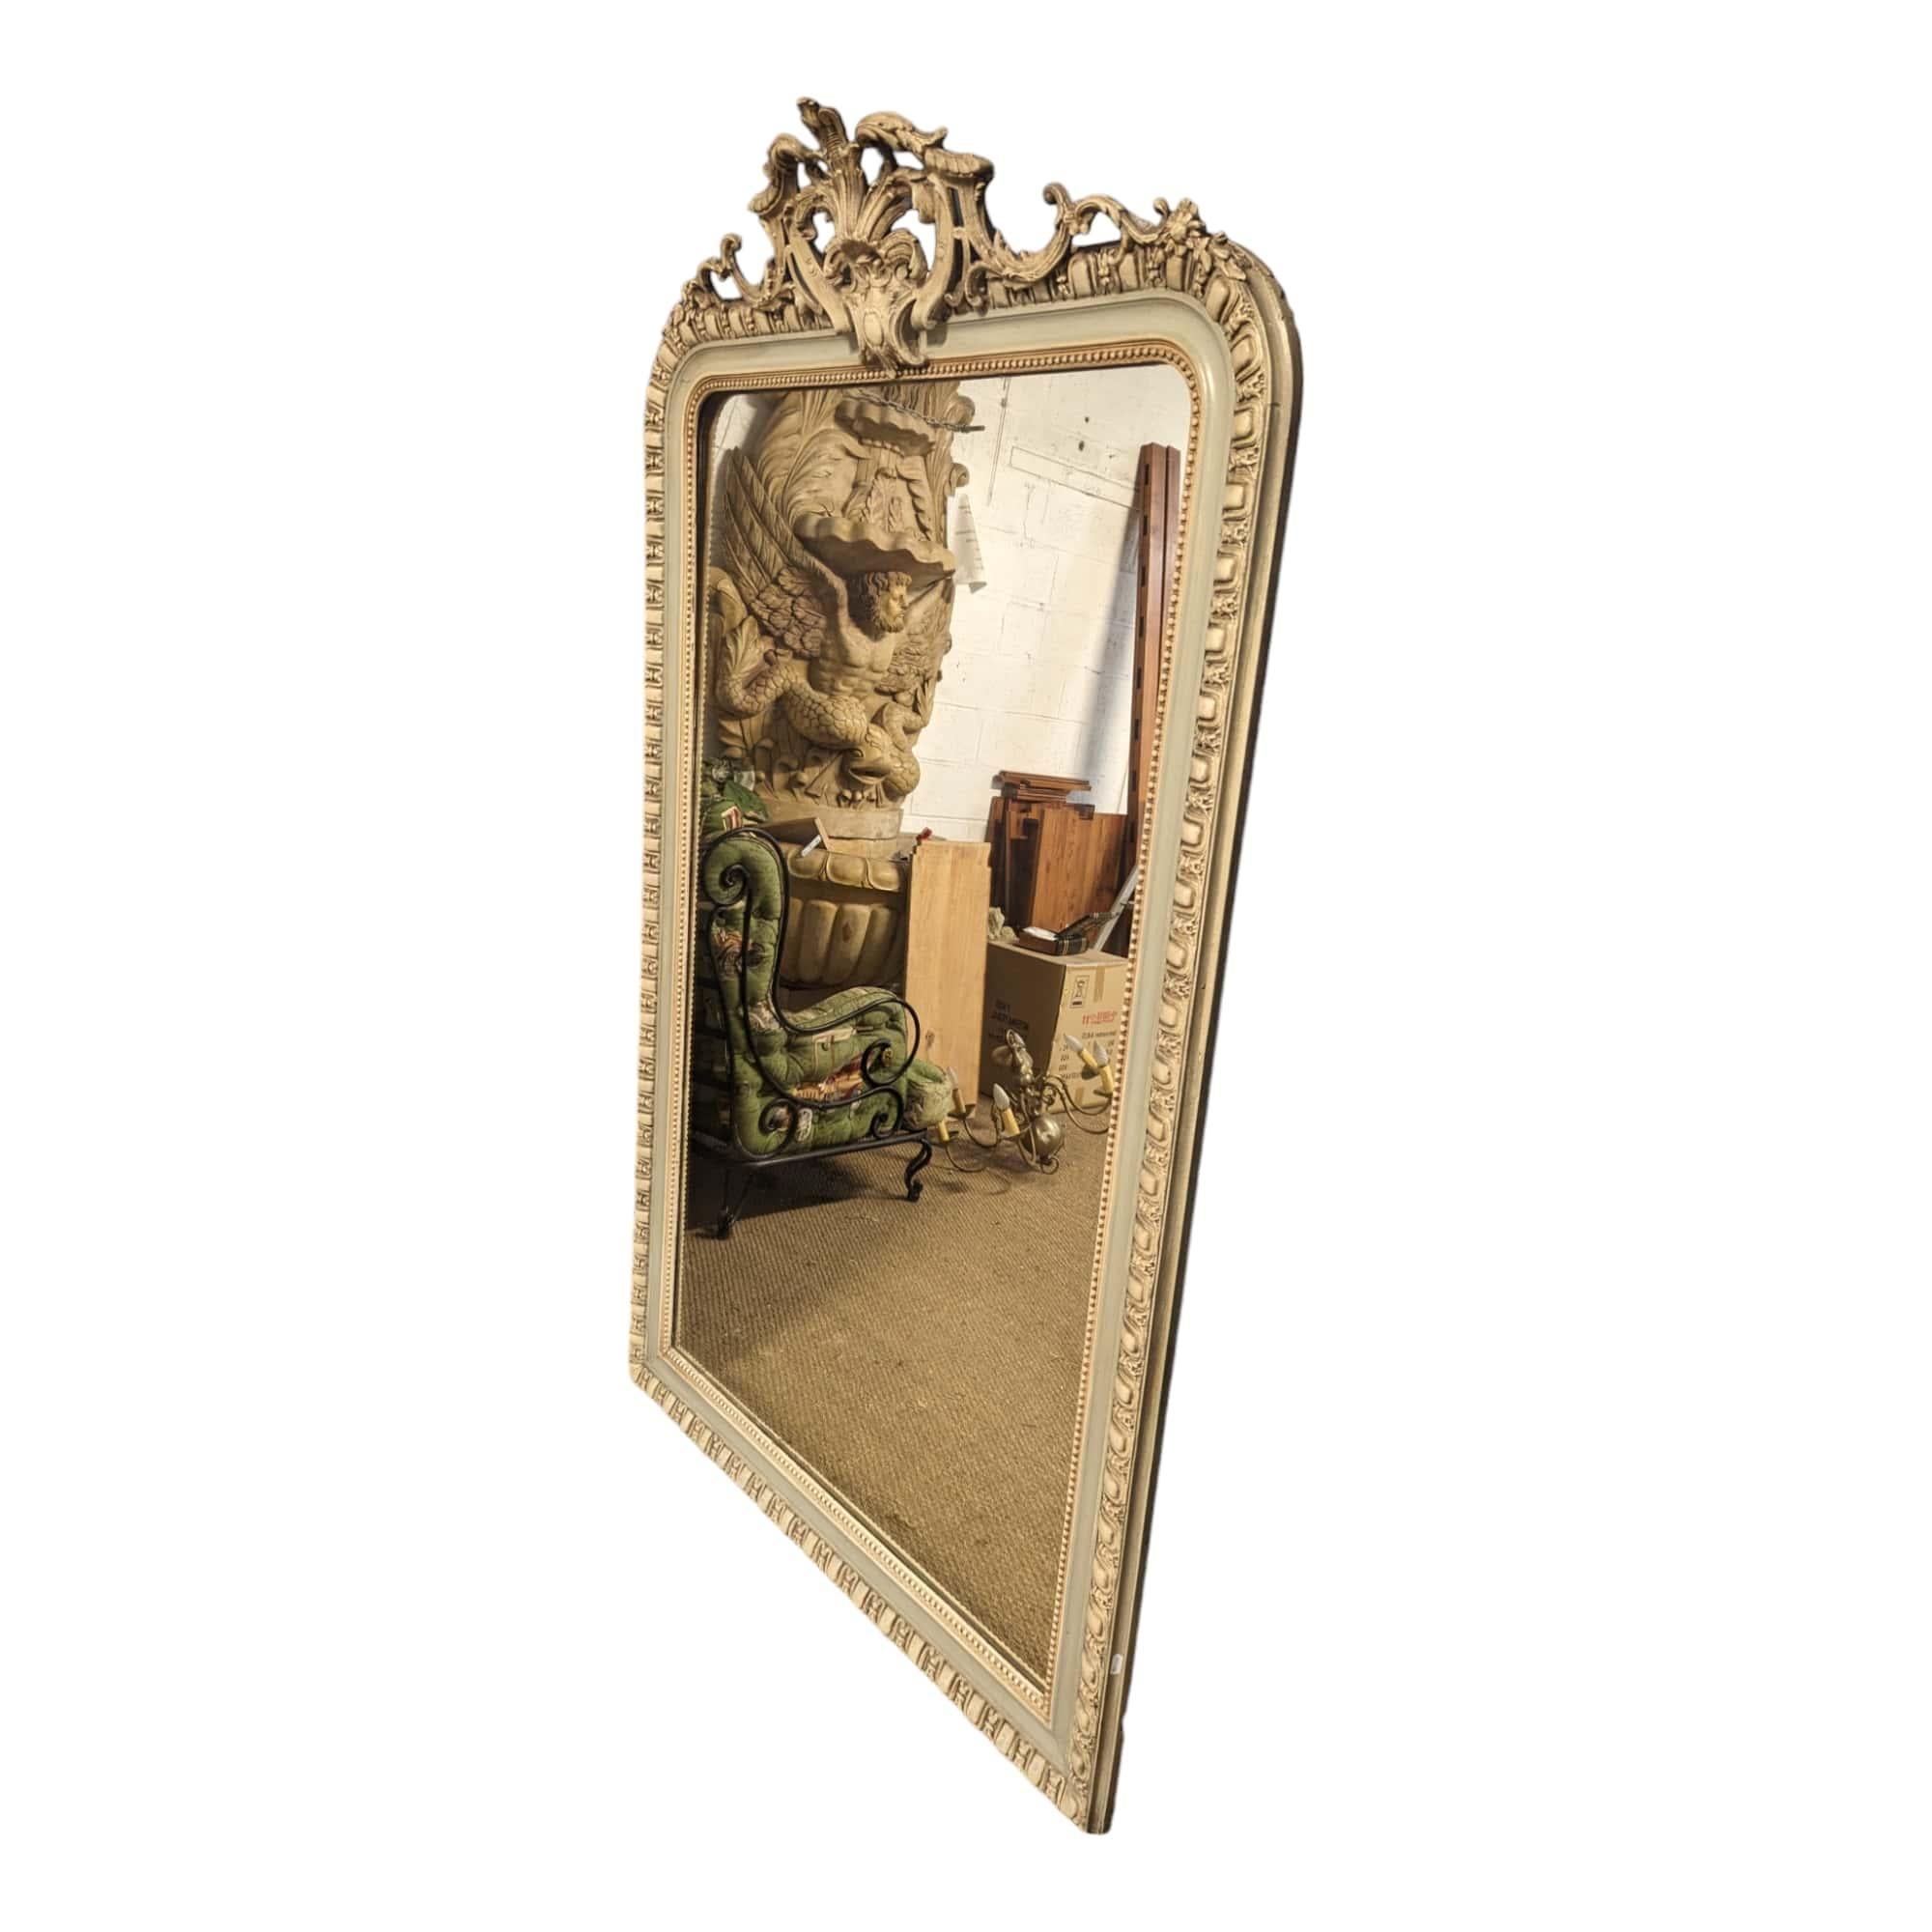 En provenance de France. Ajoutez une touche de charme antique à votre espace avec ce superbe miroir double patiné de la fin du XIXe siècle, une pièce qui respire l'élégance et le caractère d'une époque révolue.

Réalisé avec un savoir-faire